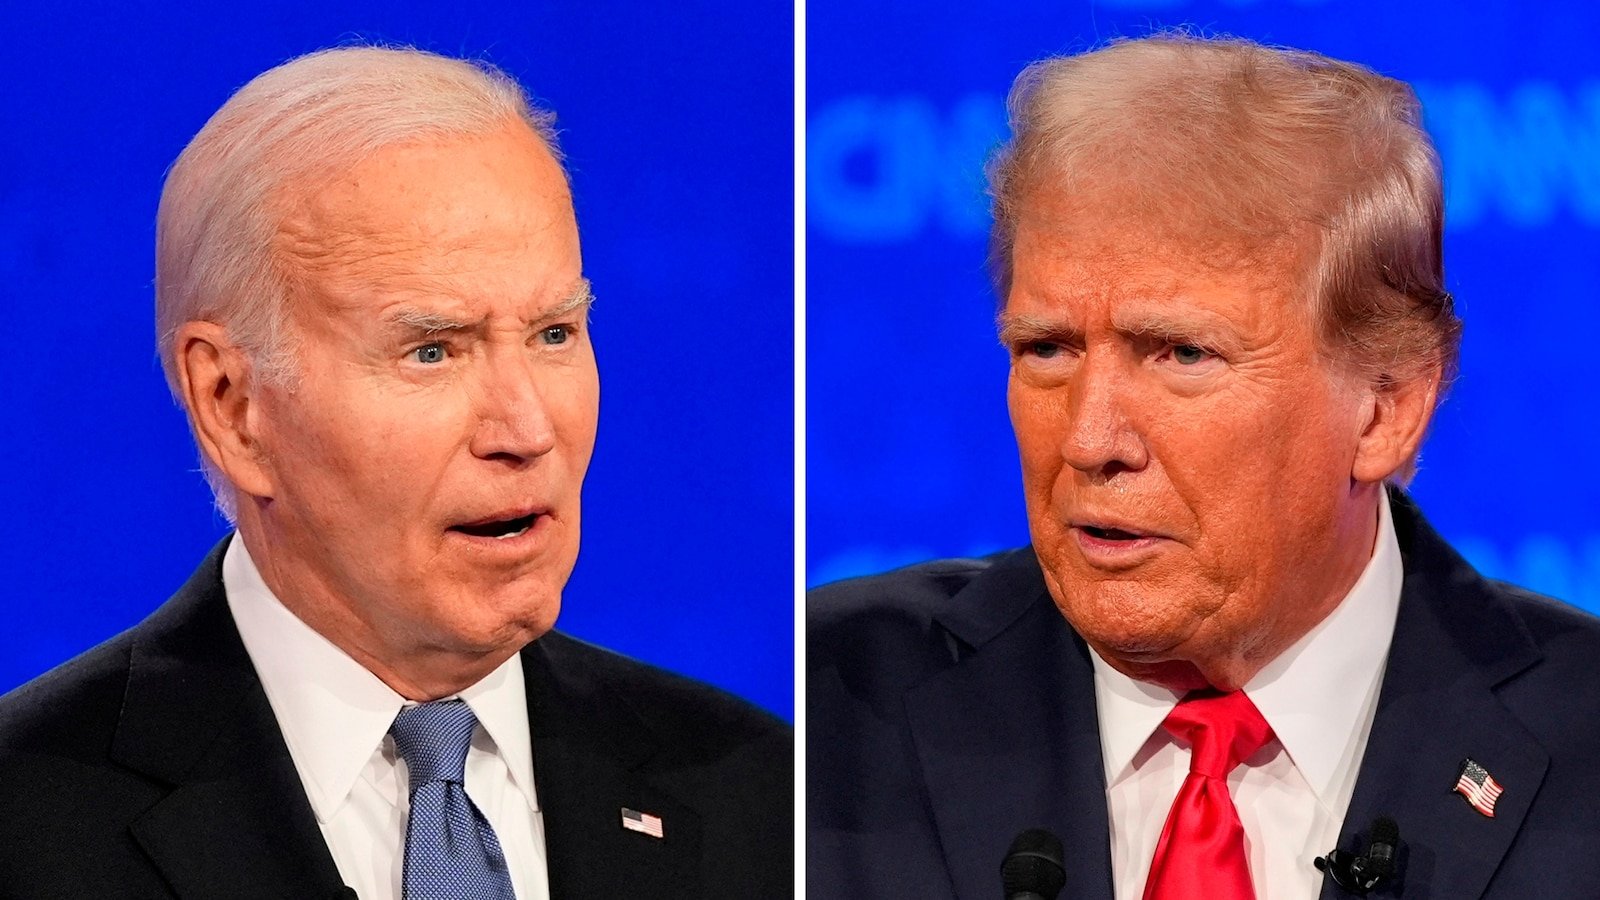 Did CNN's Biden-Trump presidential debate format work?